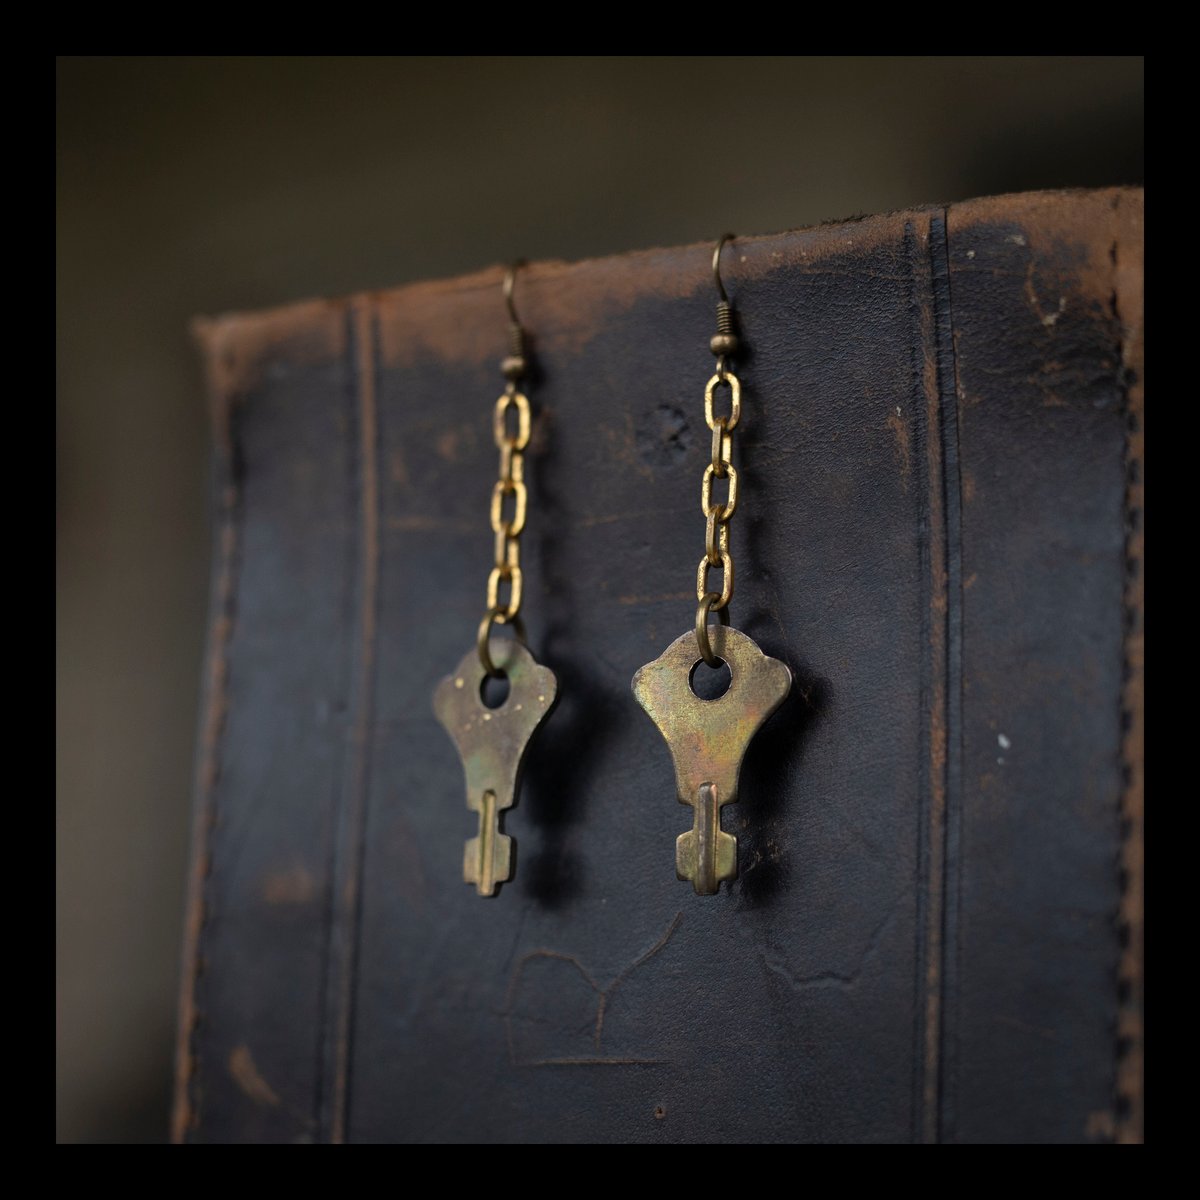 Antique Brass Key Earrings on Vintage Chain